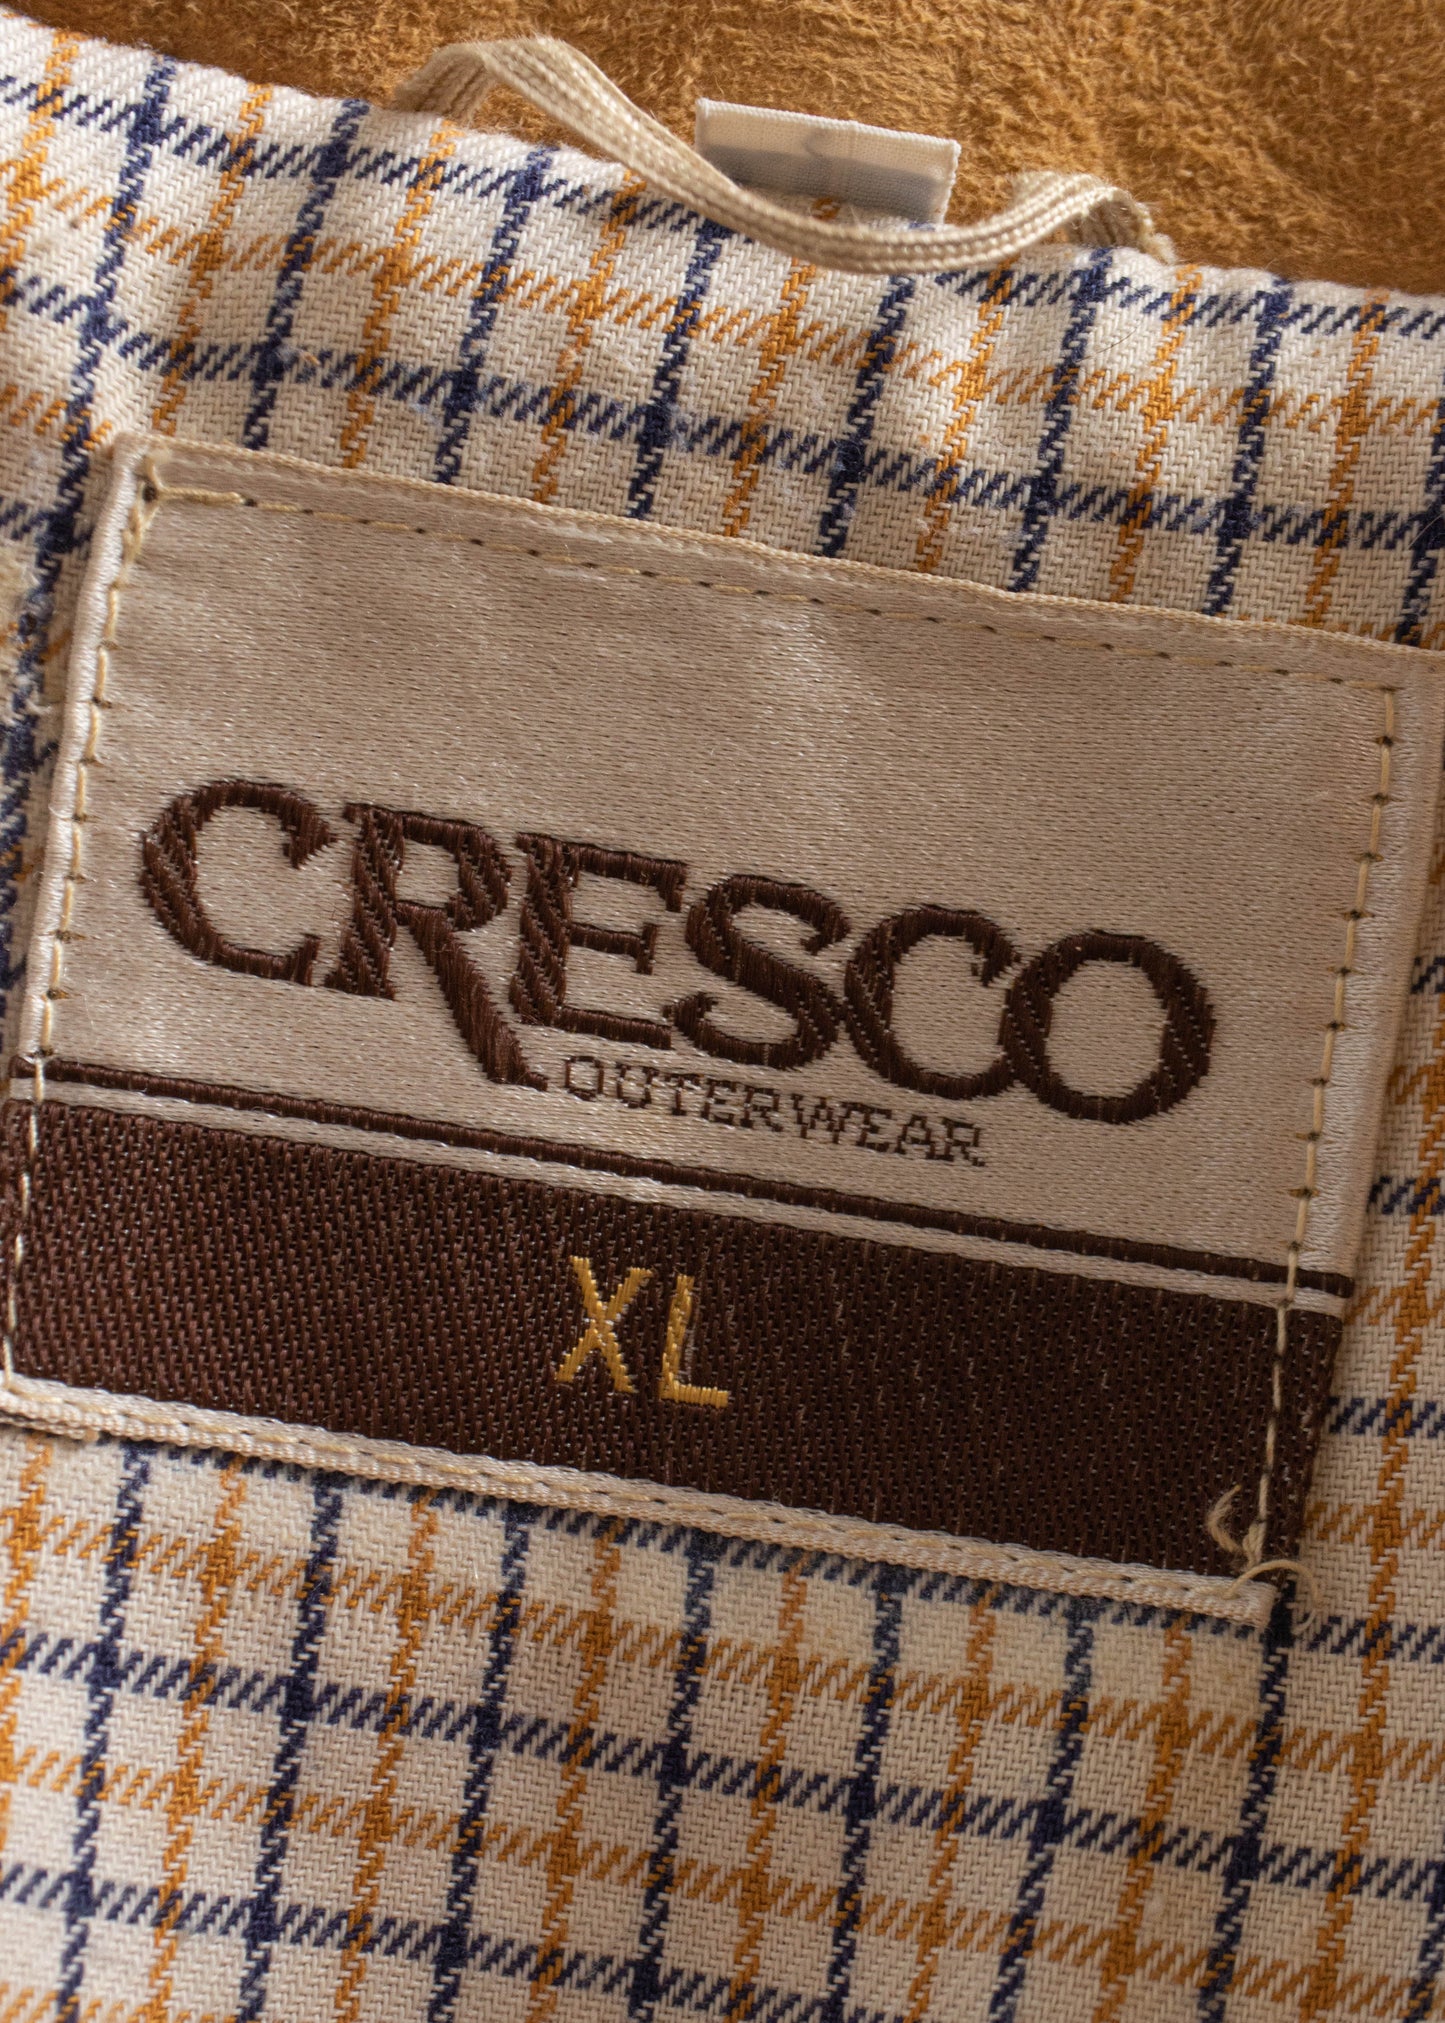 1980s Cresco Suede Jacket Size M/L